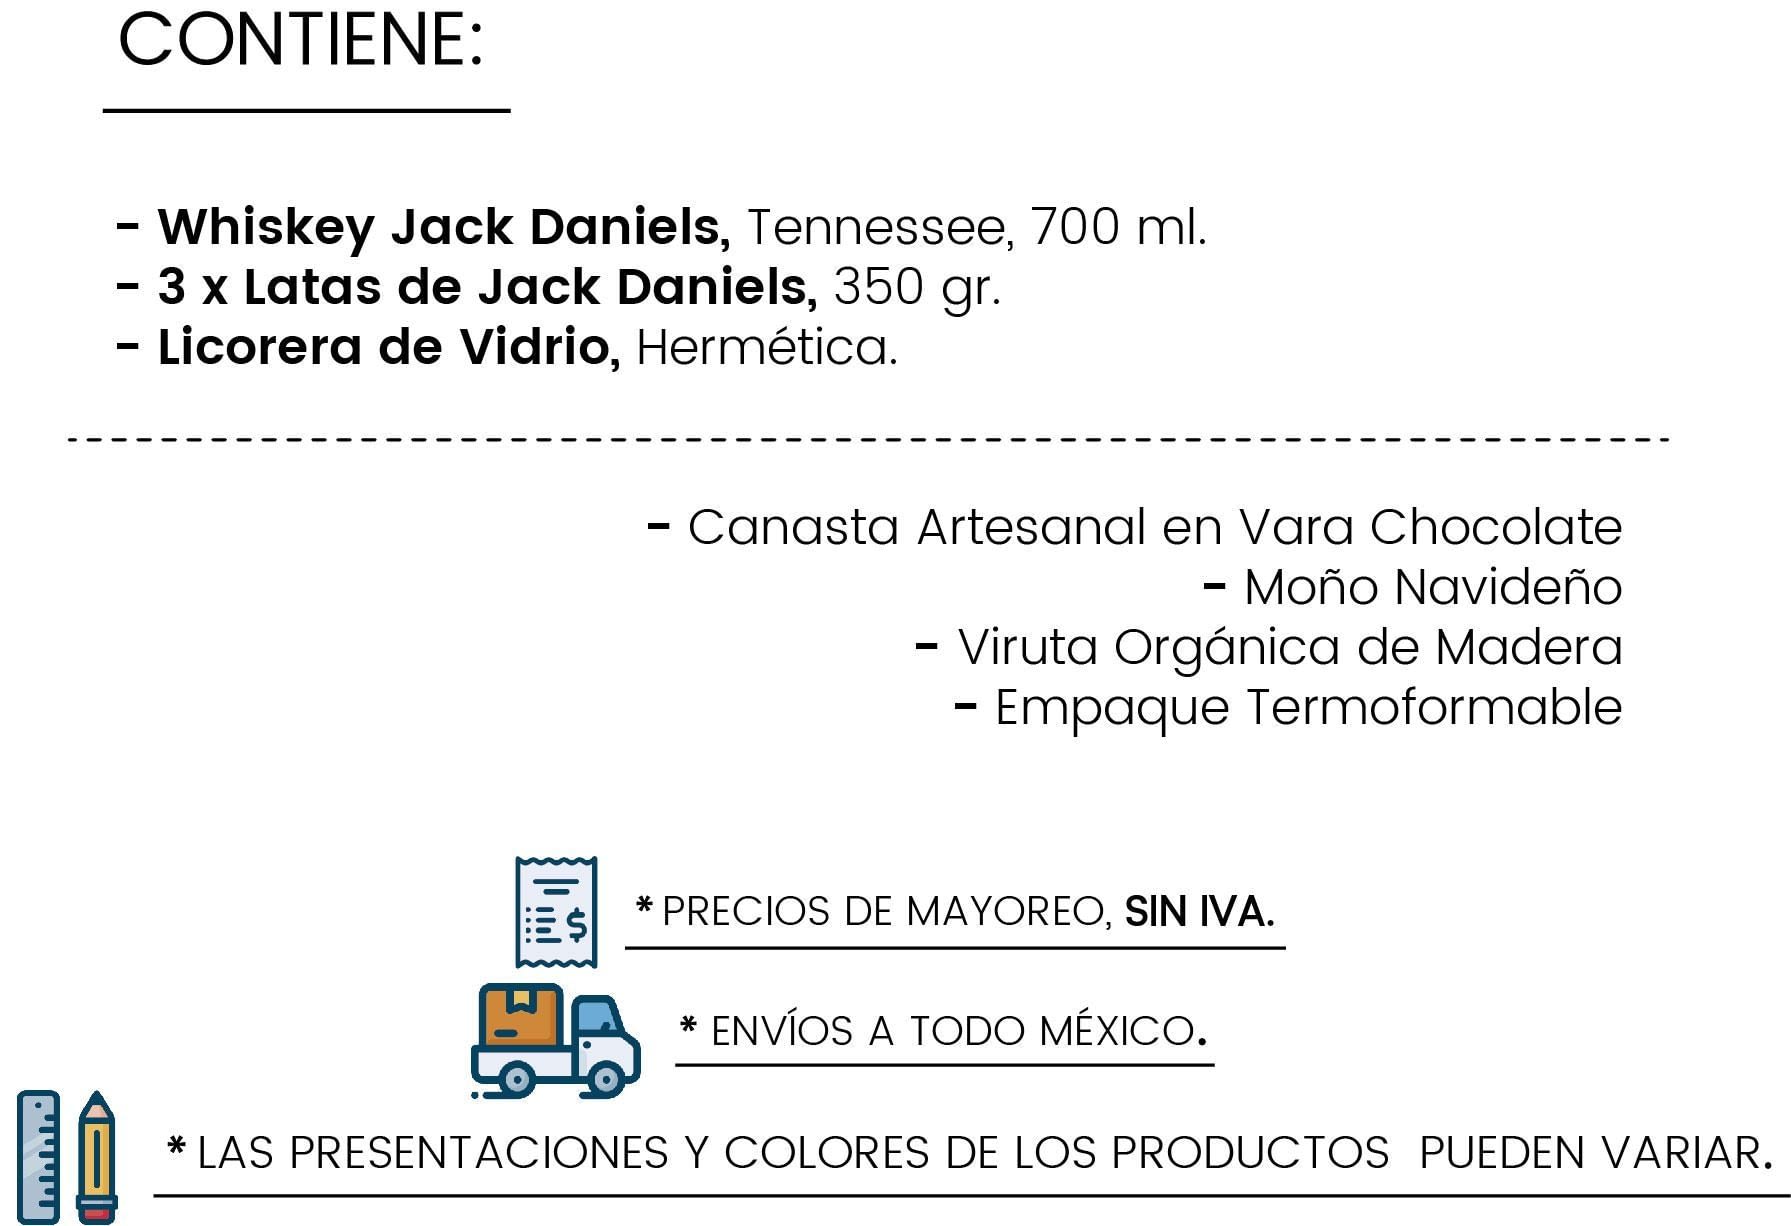 Contenido Jack's Desire by Tienda de Canastas